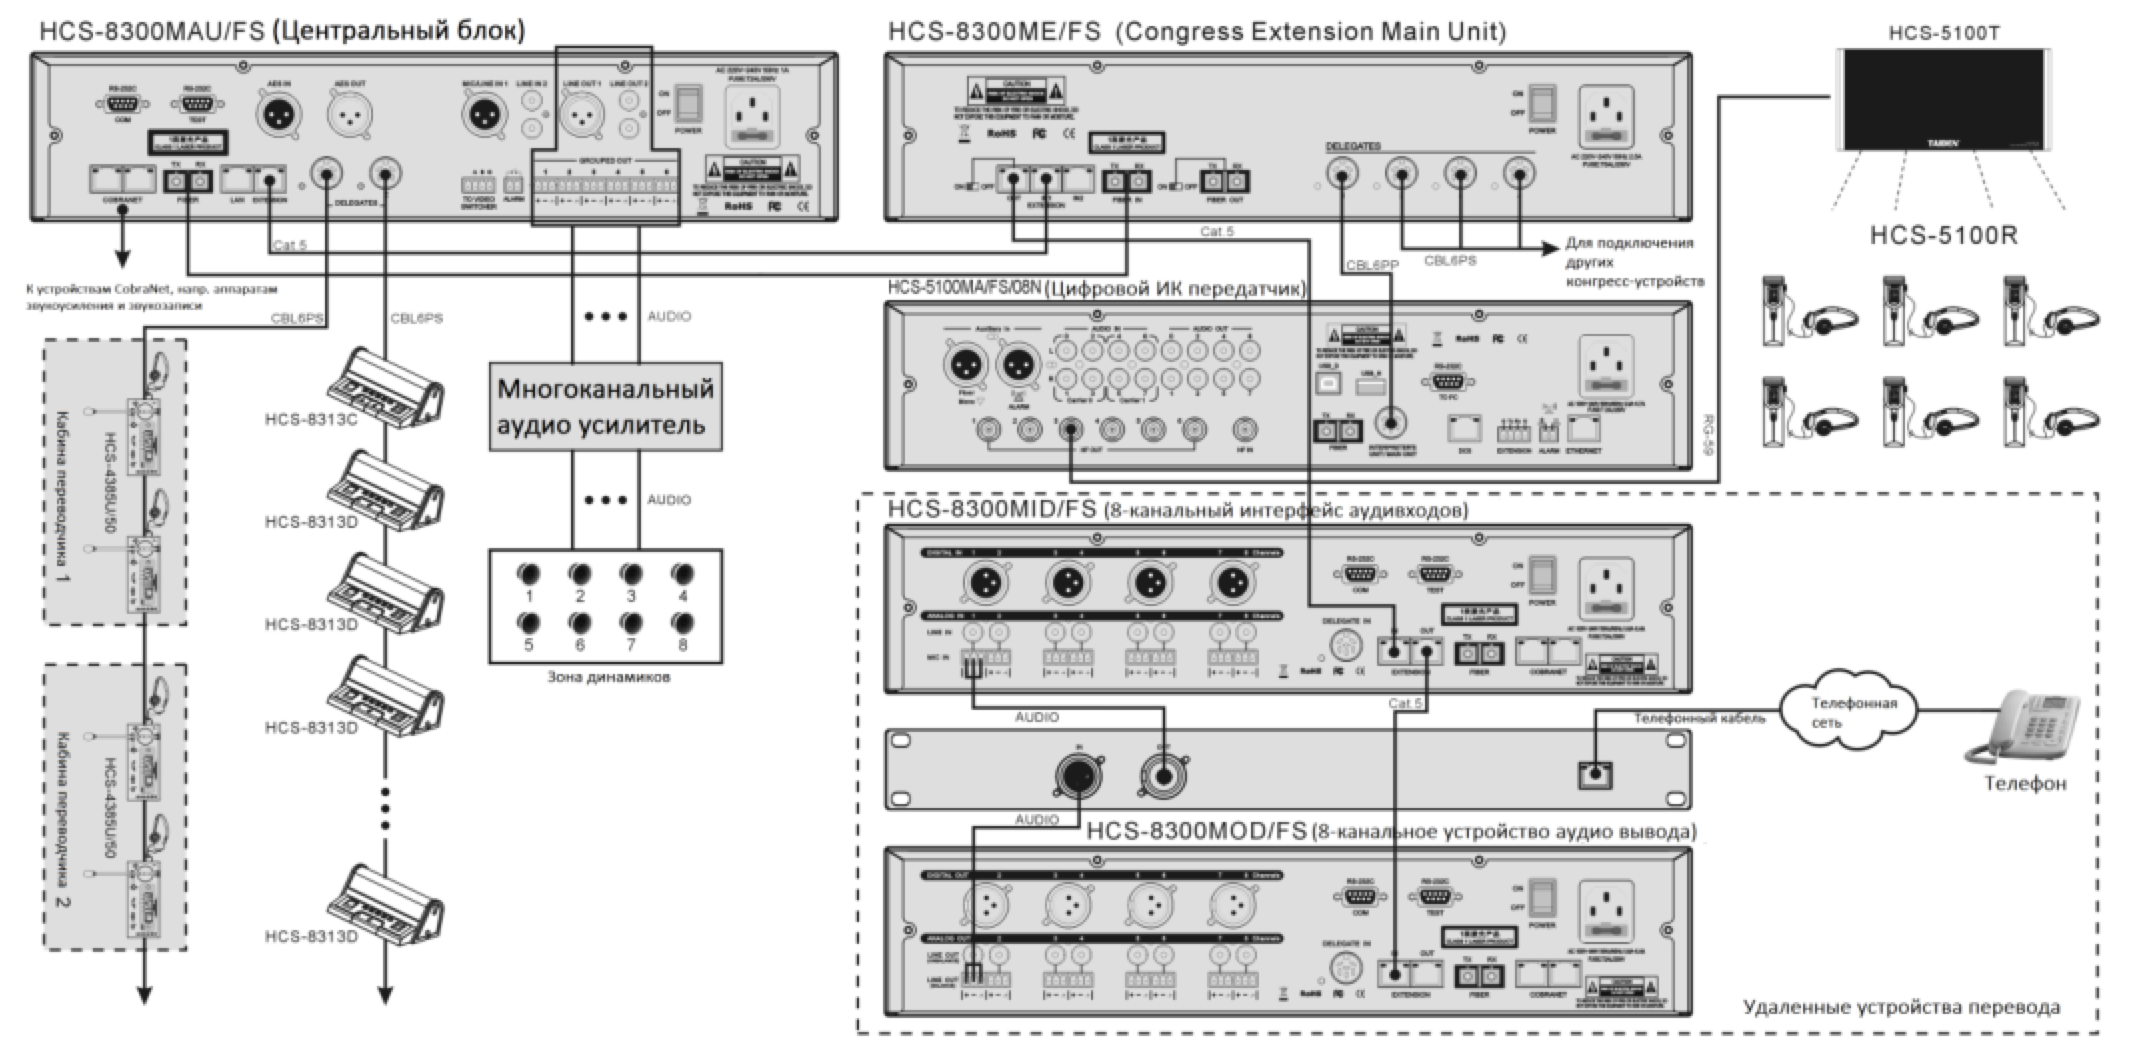 Схема подключения TAIDEN HCS-8300MOD/FS